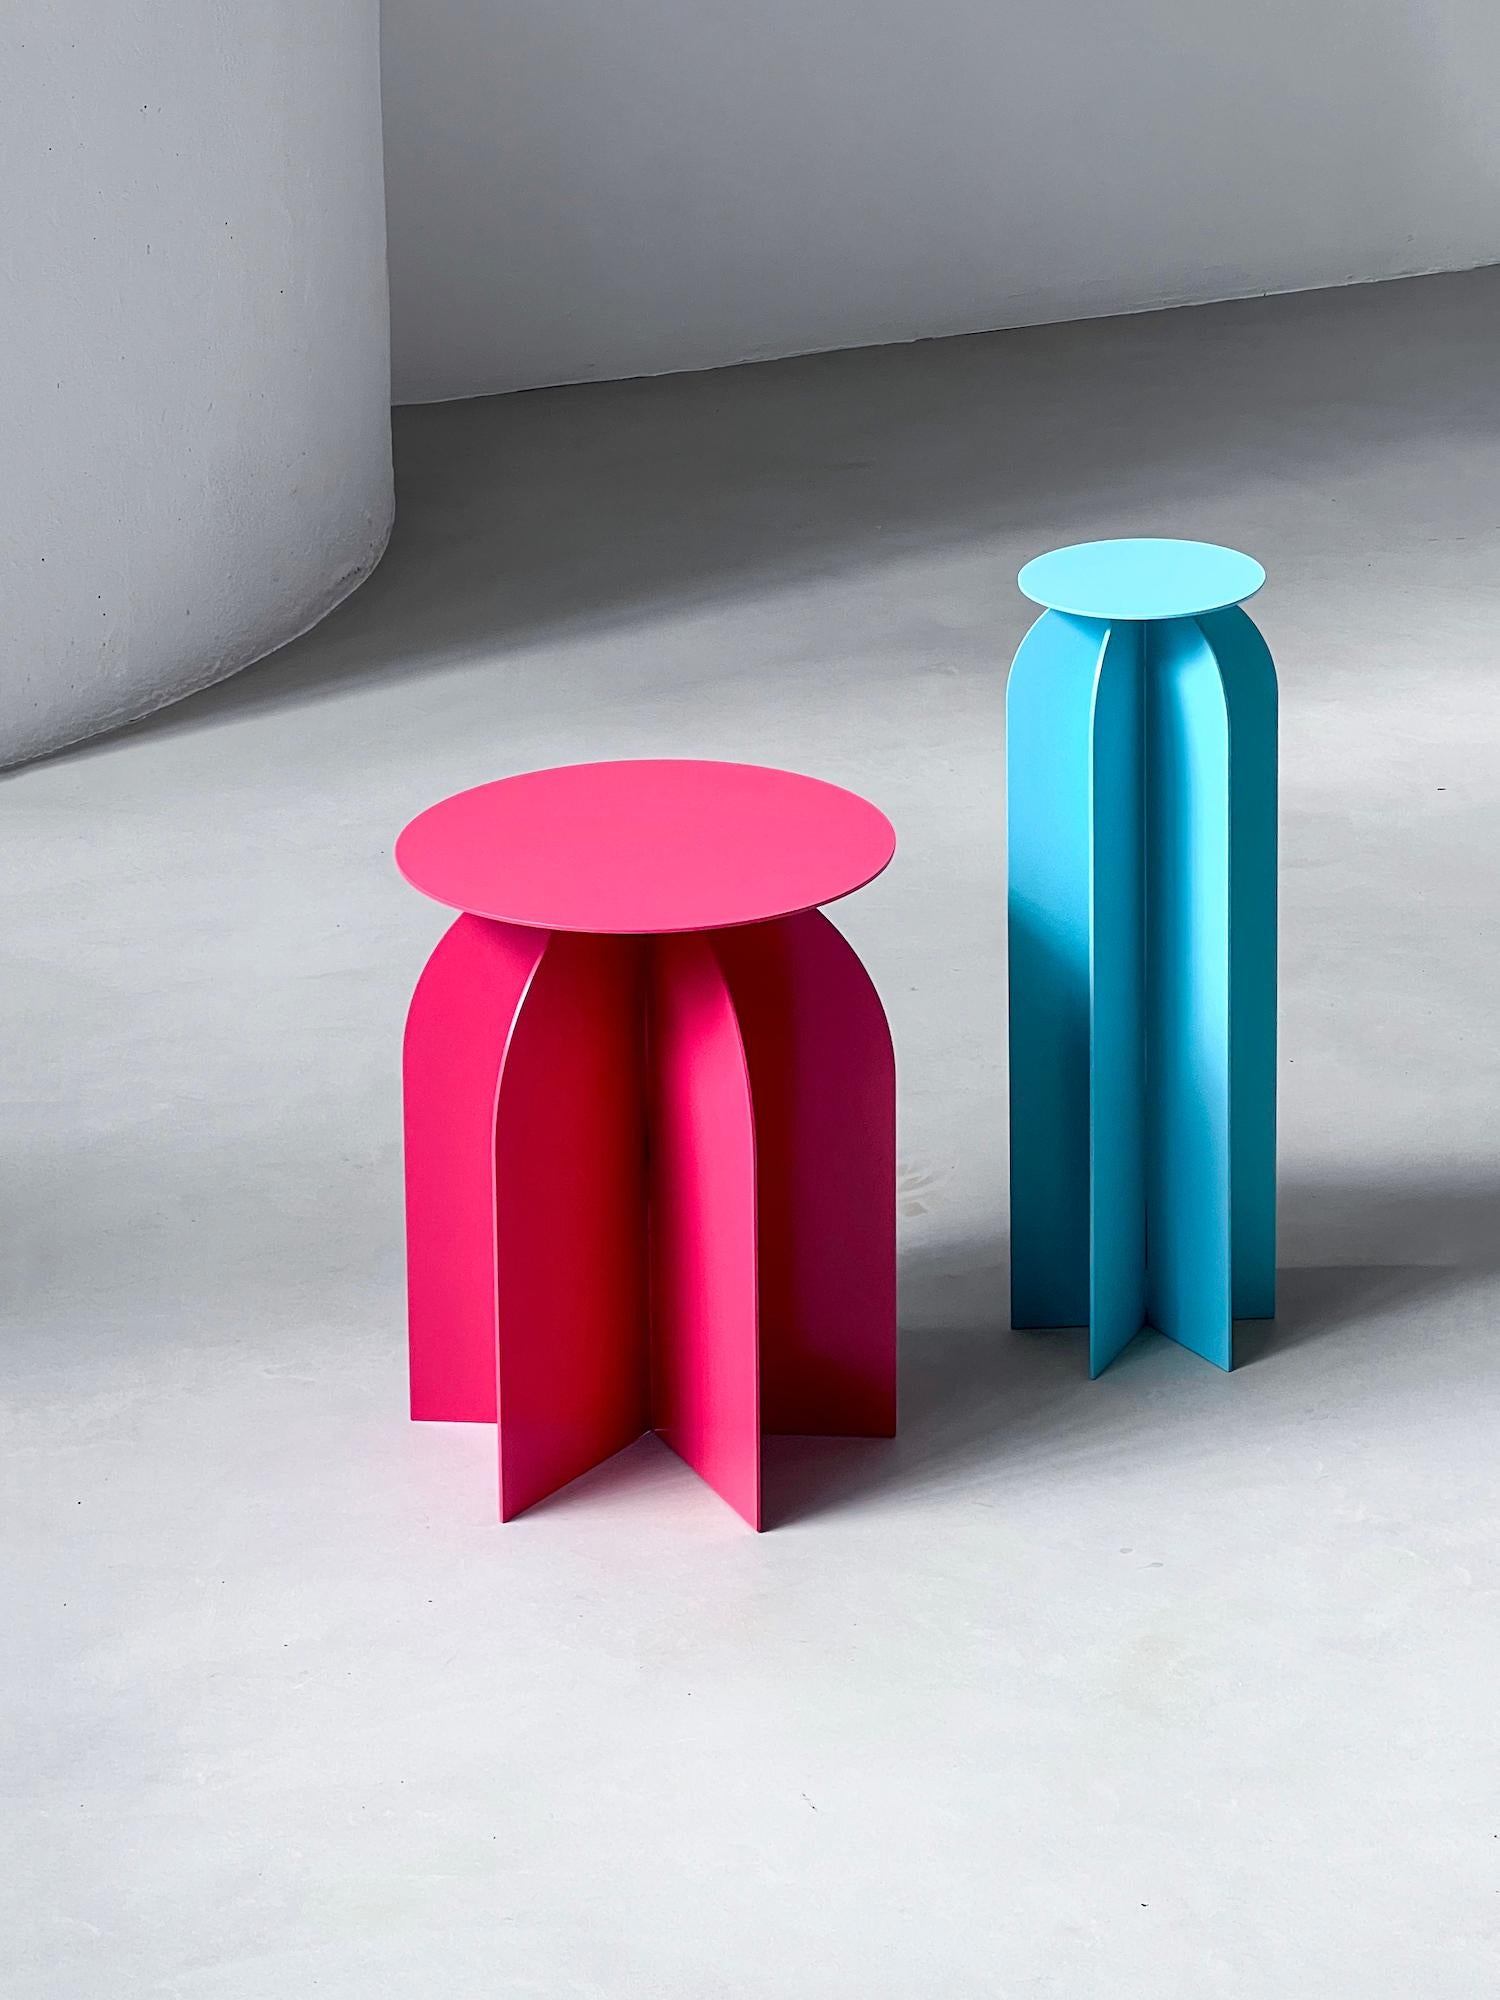 Table d'appoint décorative - Table d'extrémité sculpturale - Table architecturale de salon

La table d'appoint Palladium est l'un de nos produits les plus appréciés et les plus vendus. Cette année, à l'occasion de la 2024 Milano Design Week, nous